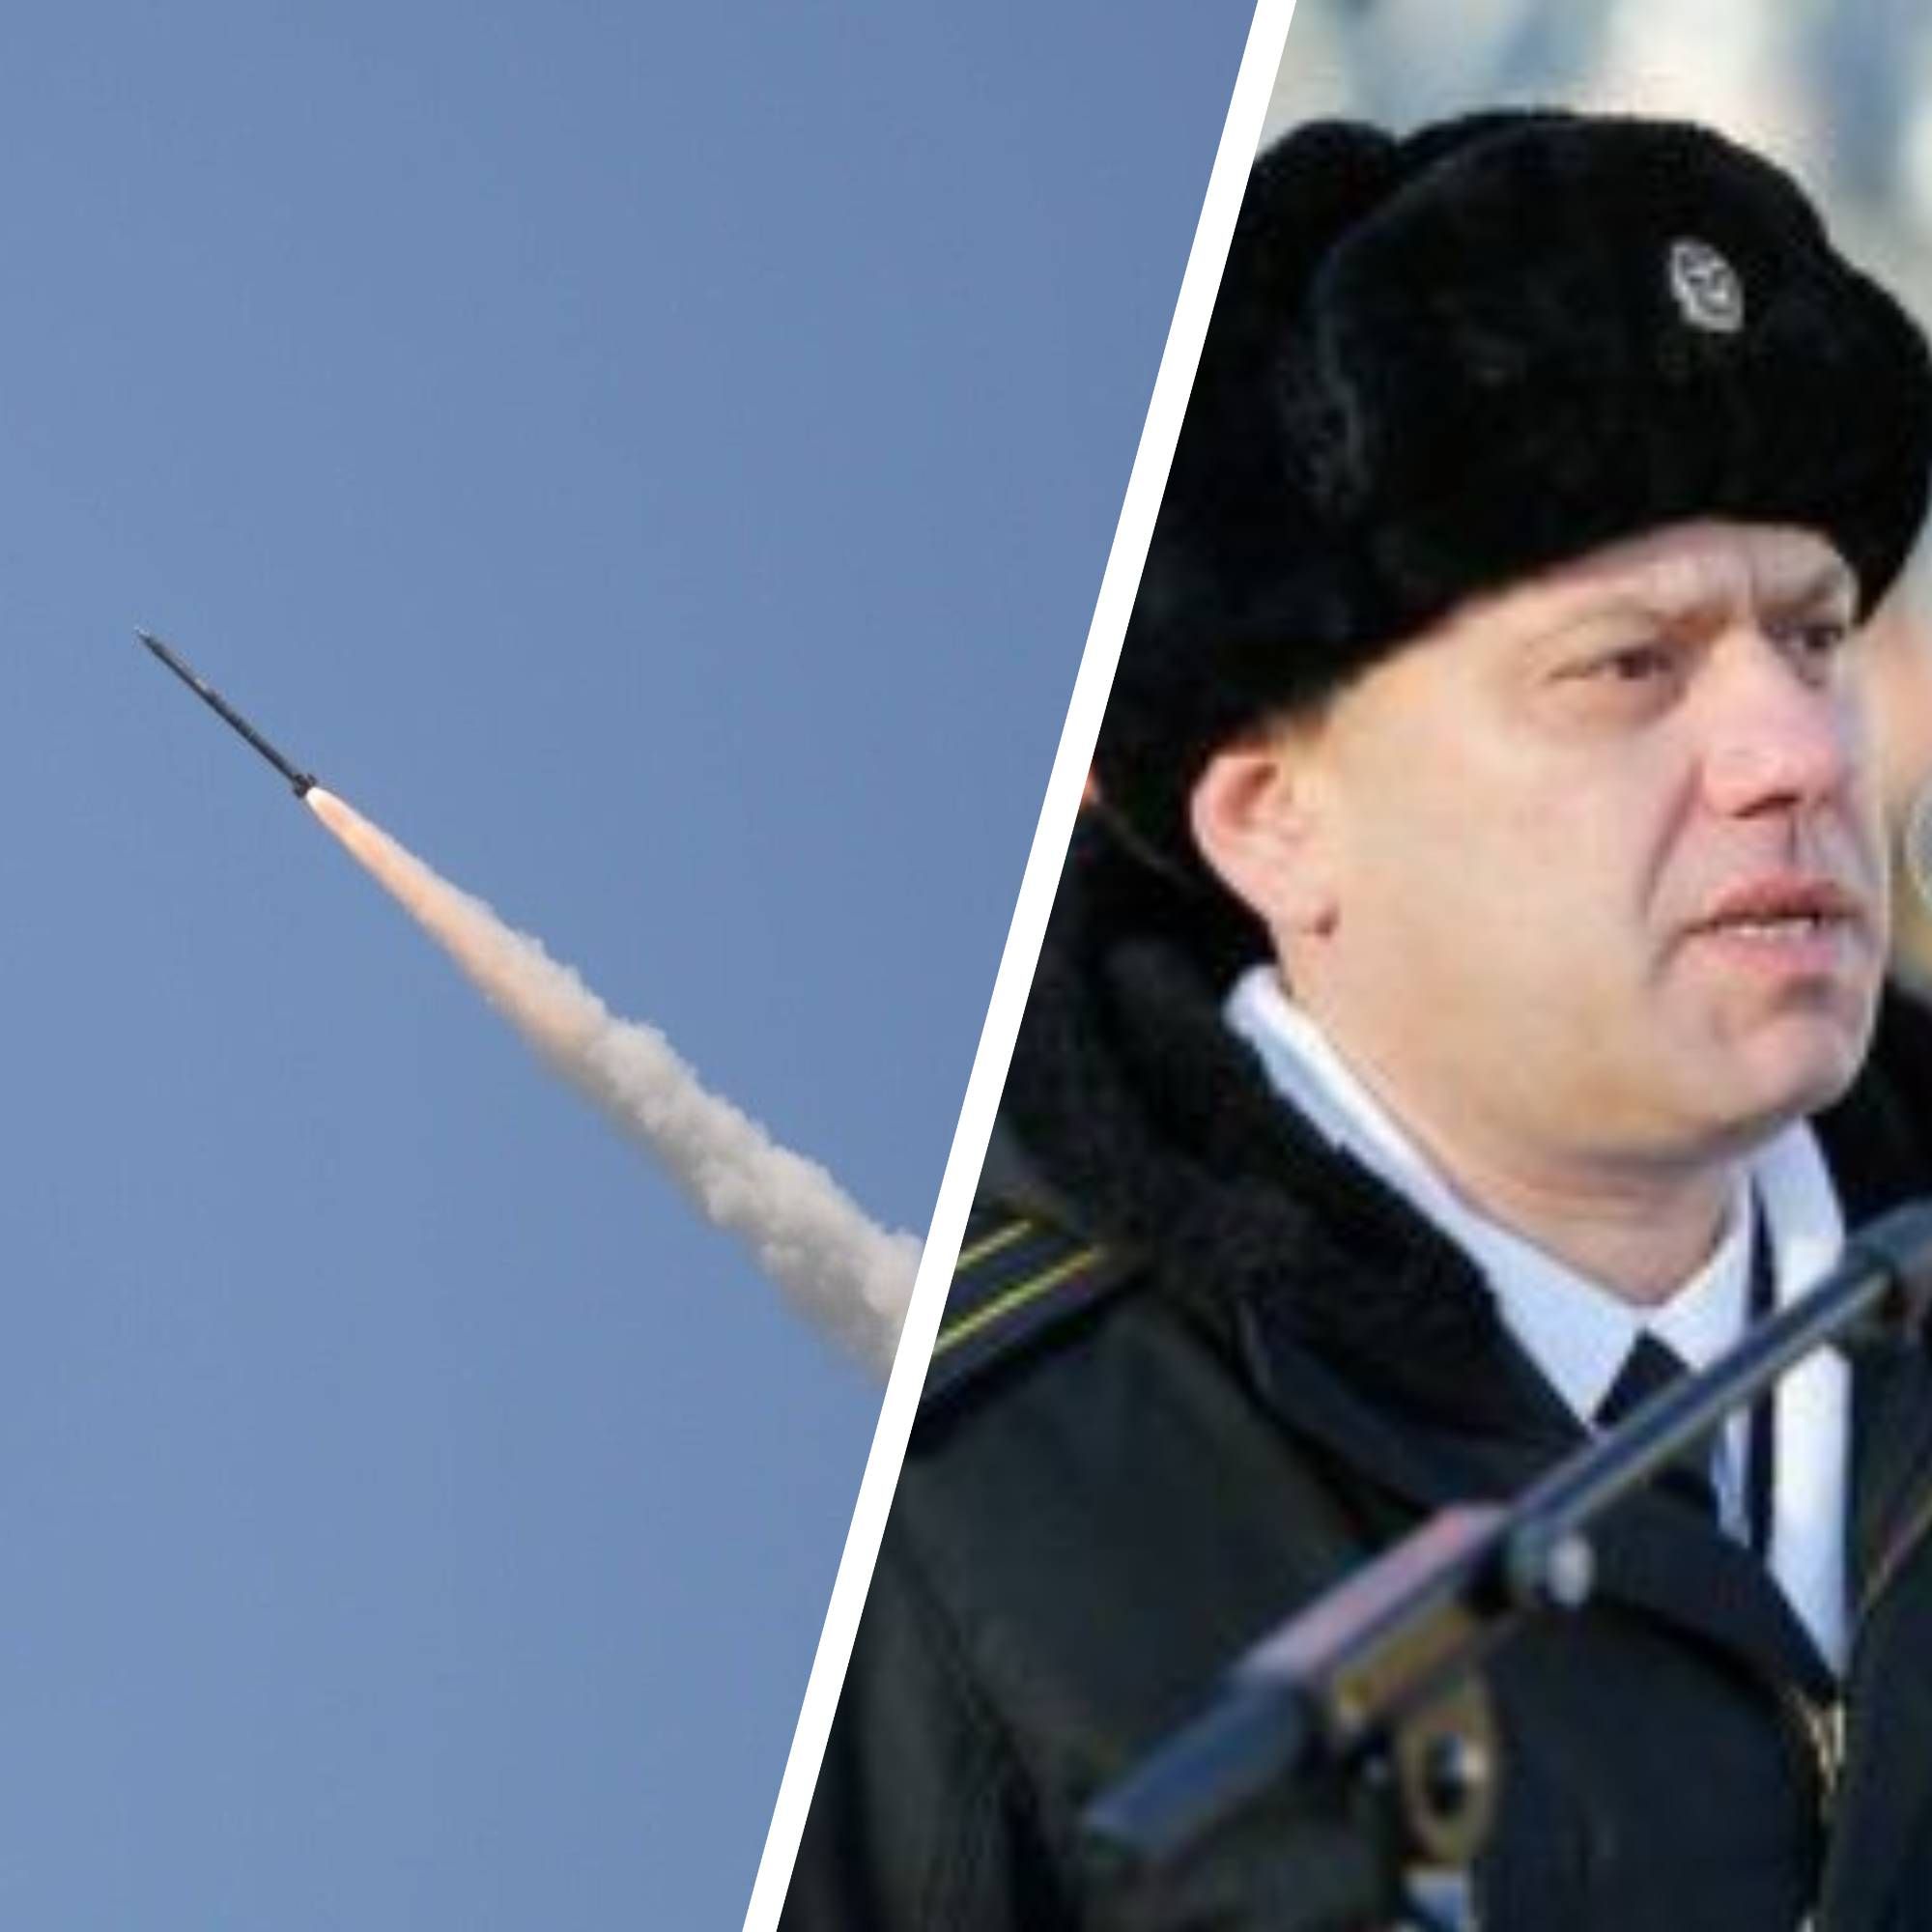 Обстрелы в Украине - как будут судить капитана российского корабля